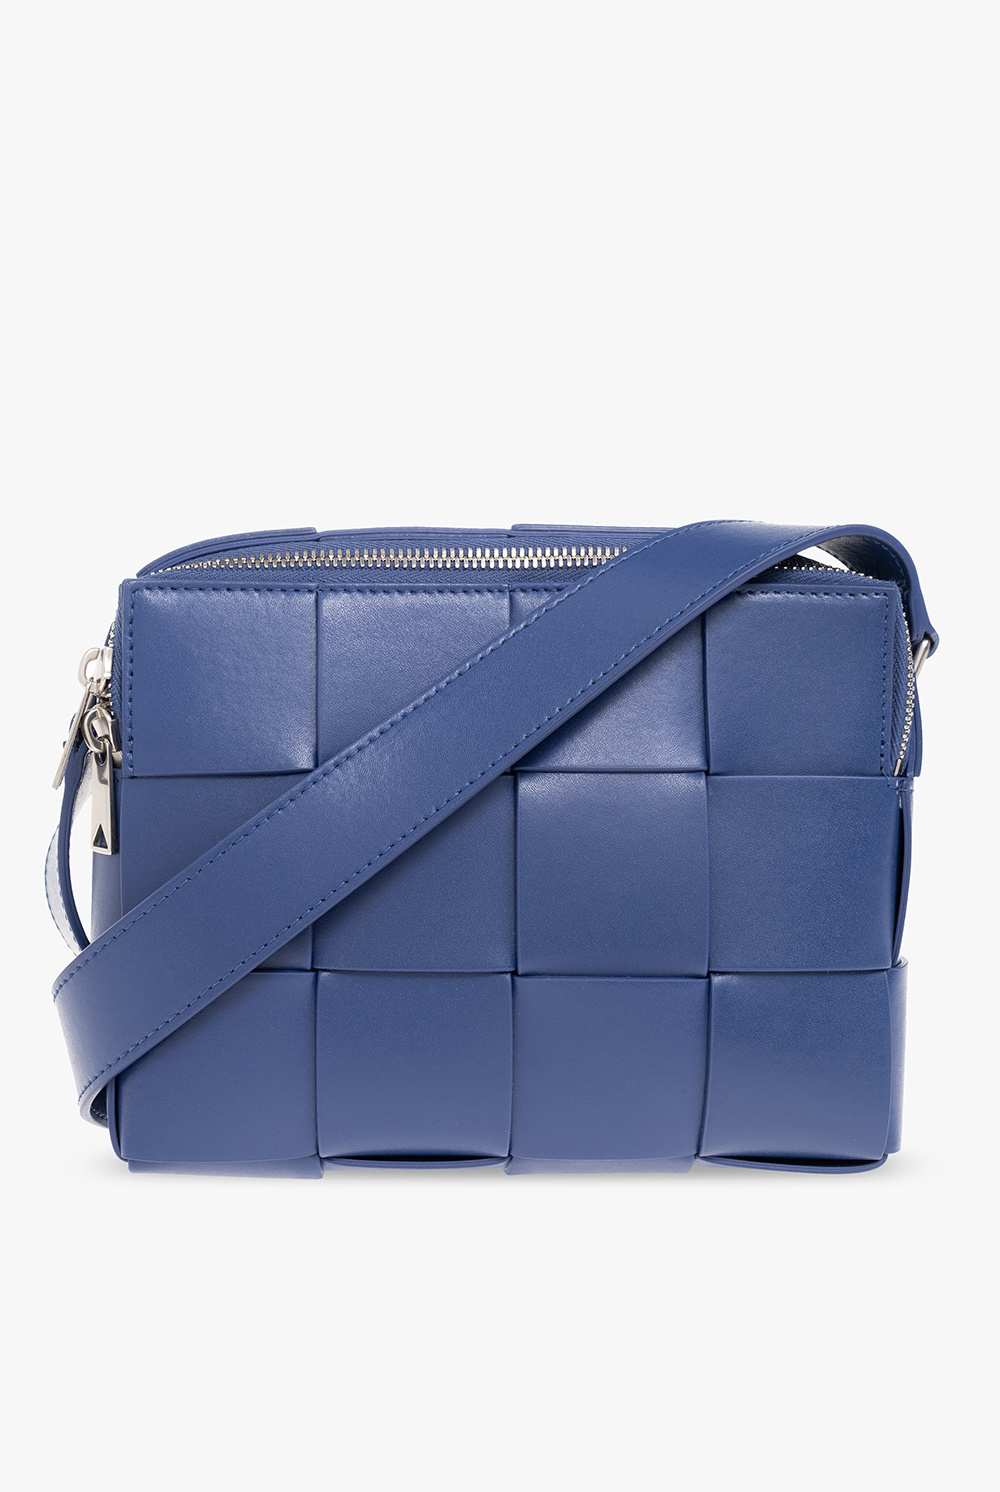 Bottega Veneta 'cassette Small' Shoulder Bag in Blue